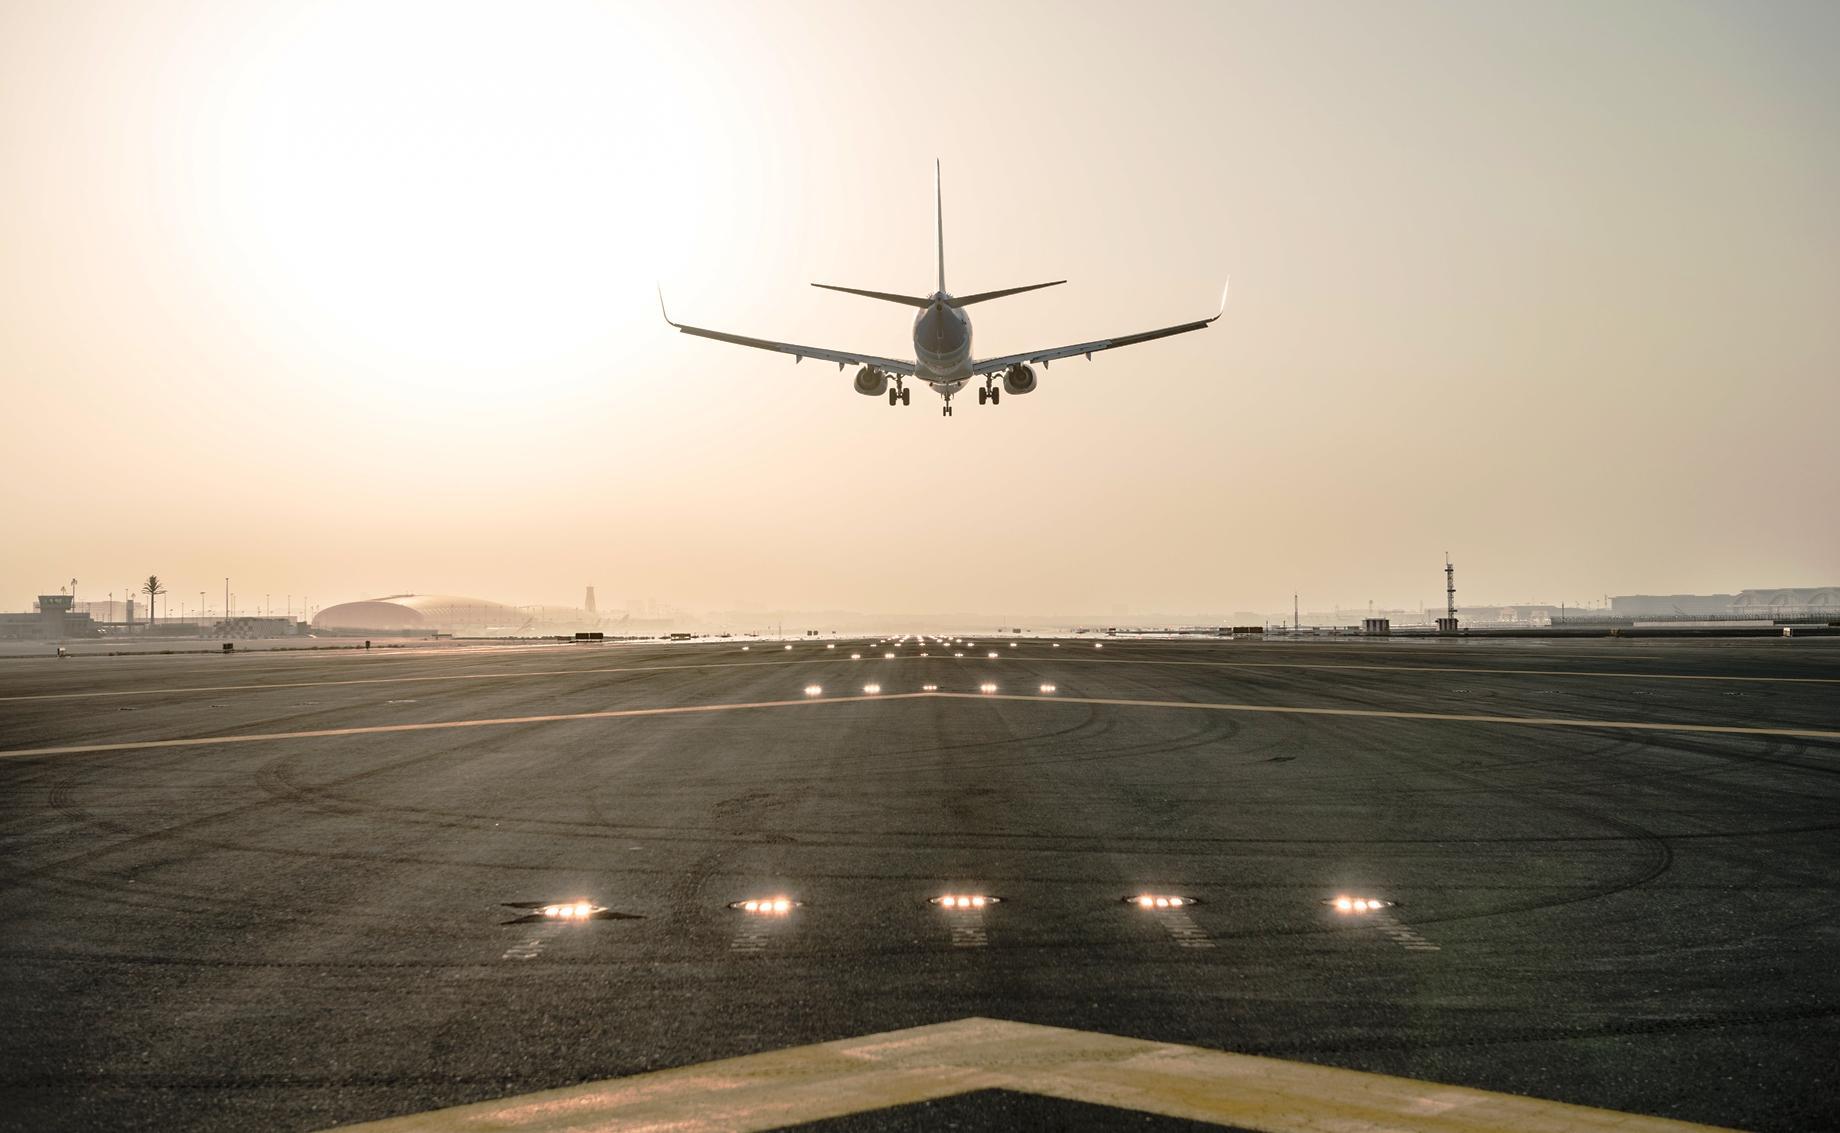 Αποτέλεσμα εικόνας για Dubai airport to close southern runway